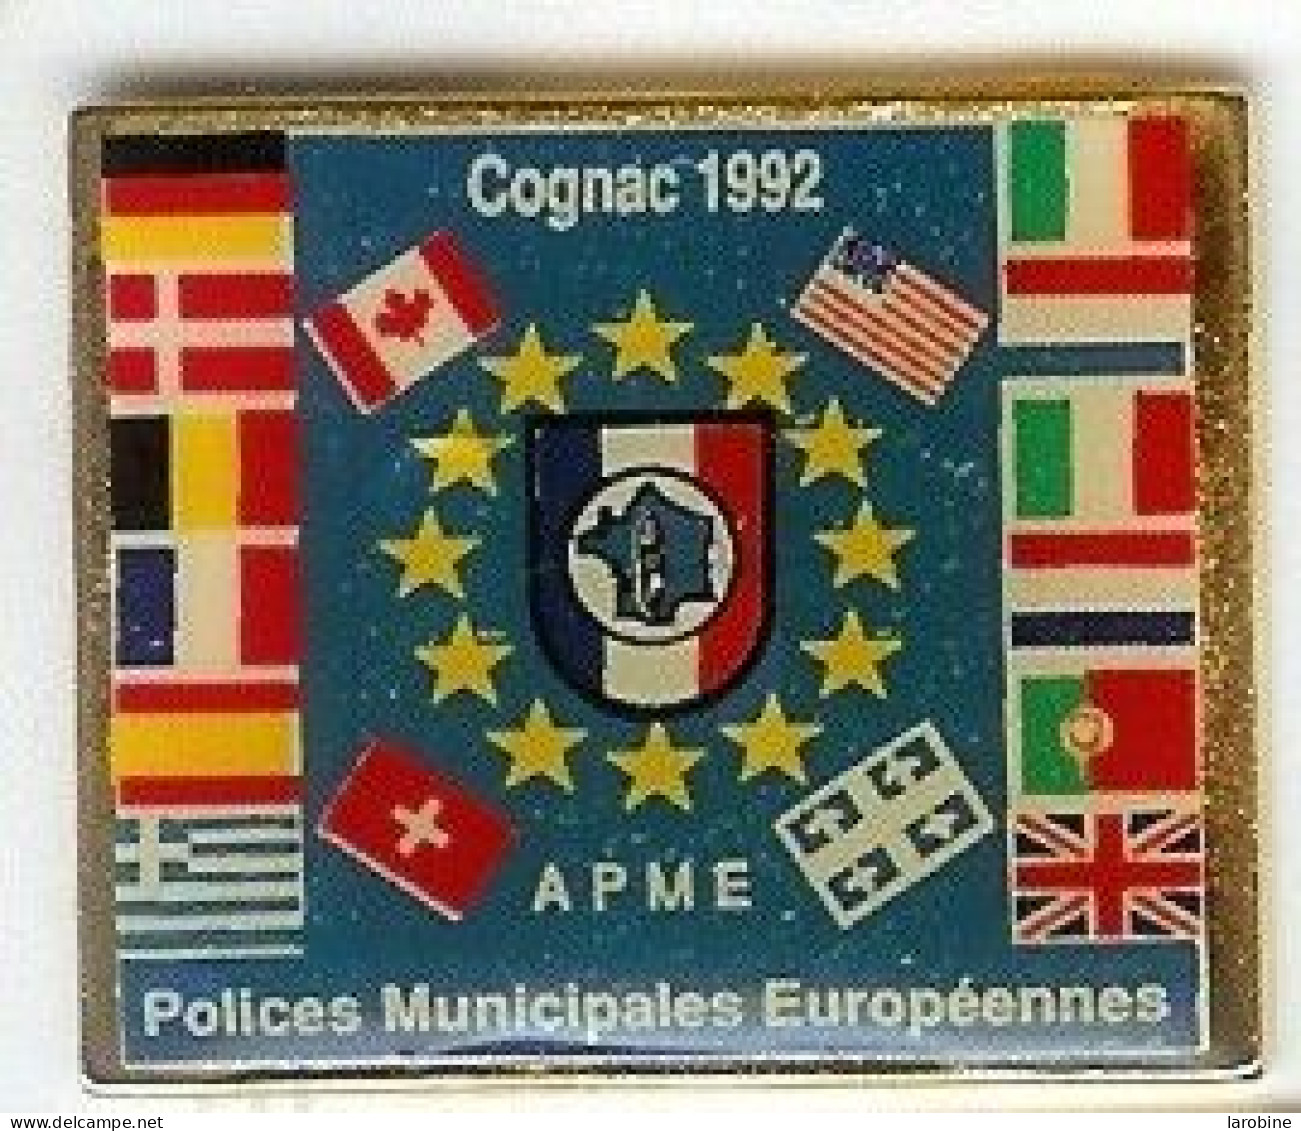 @@ COGNAC Polices Municipales Européennes APME 1992 (3x2.5) @@pol92b - Police